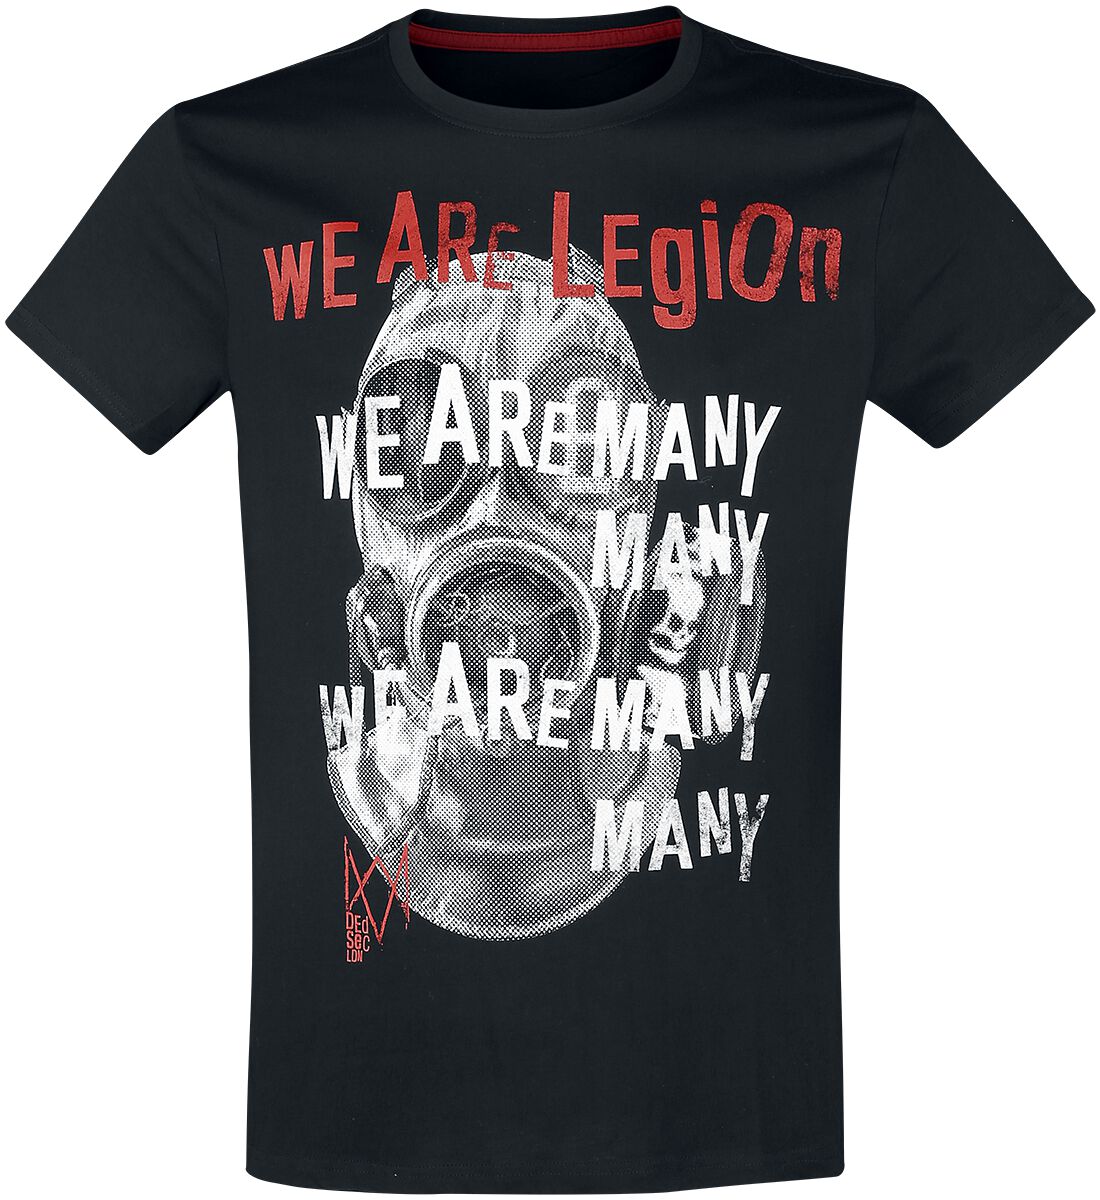 Watch Dogs Legion - We Are Legion T-Shirt black